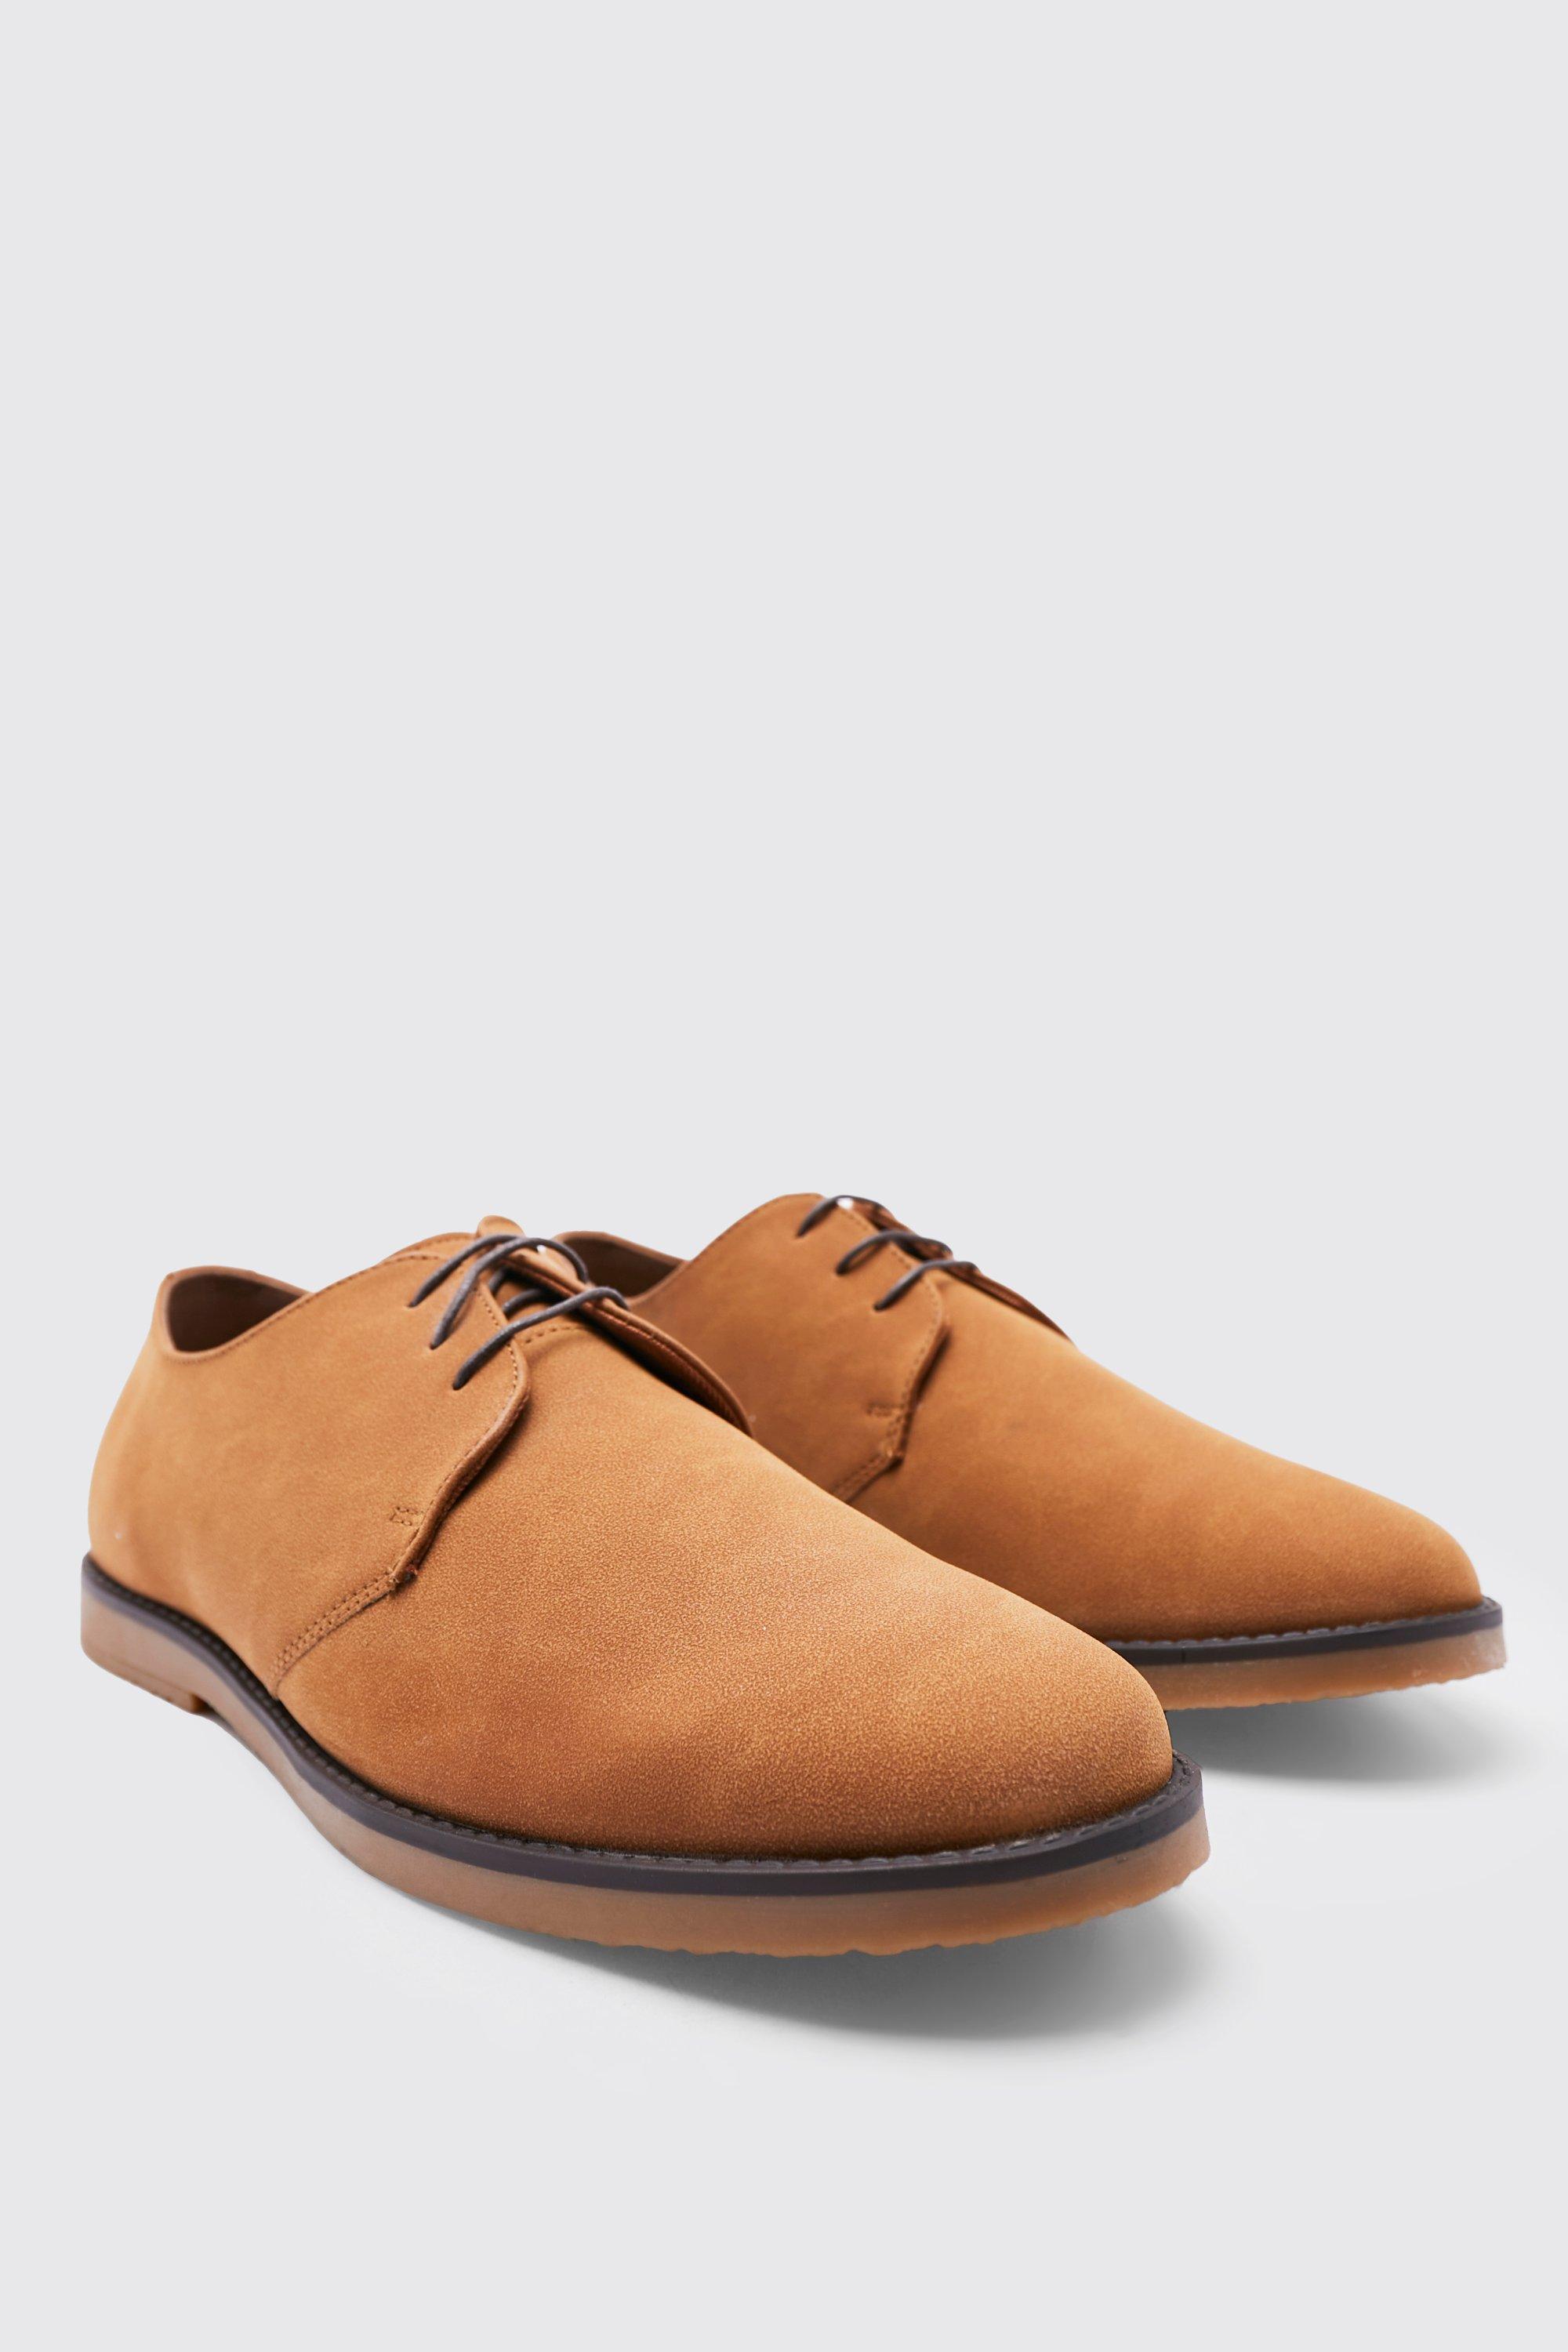 chaussures derby en faux daim homme - brun doré - 42, brun doré